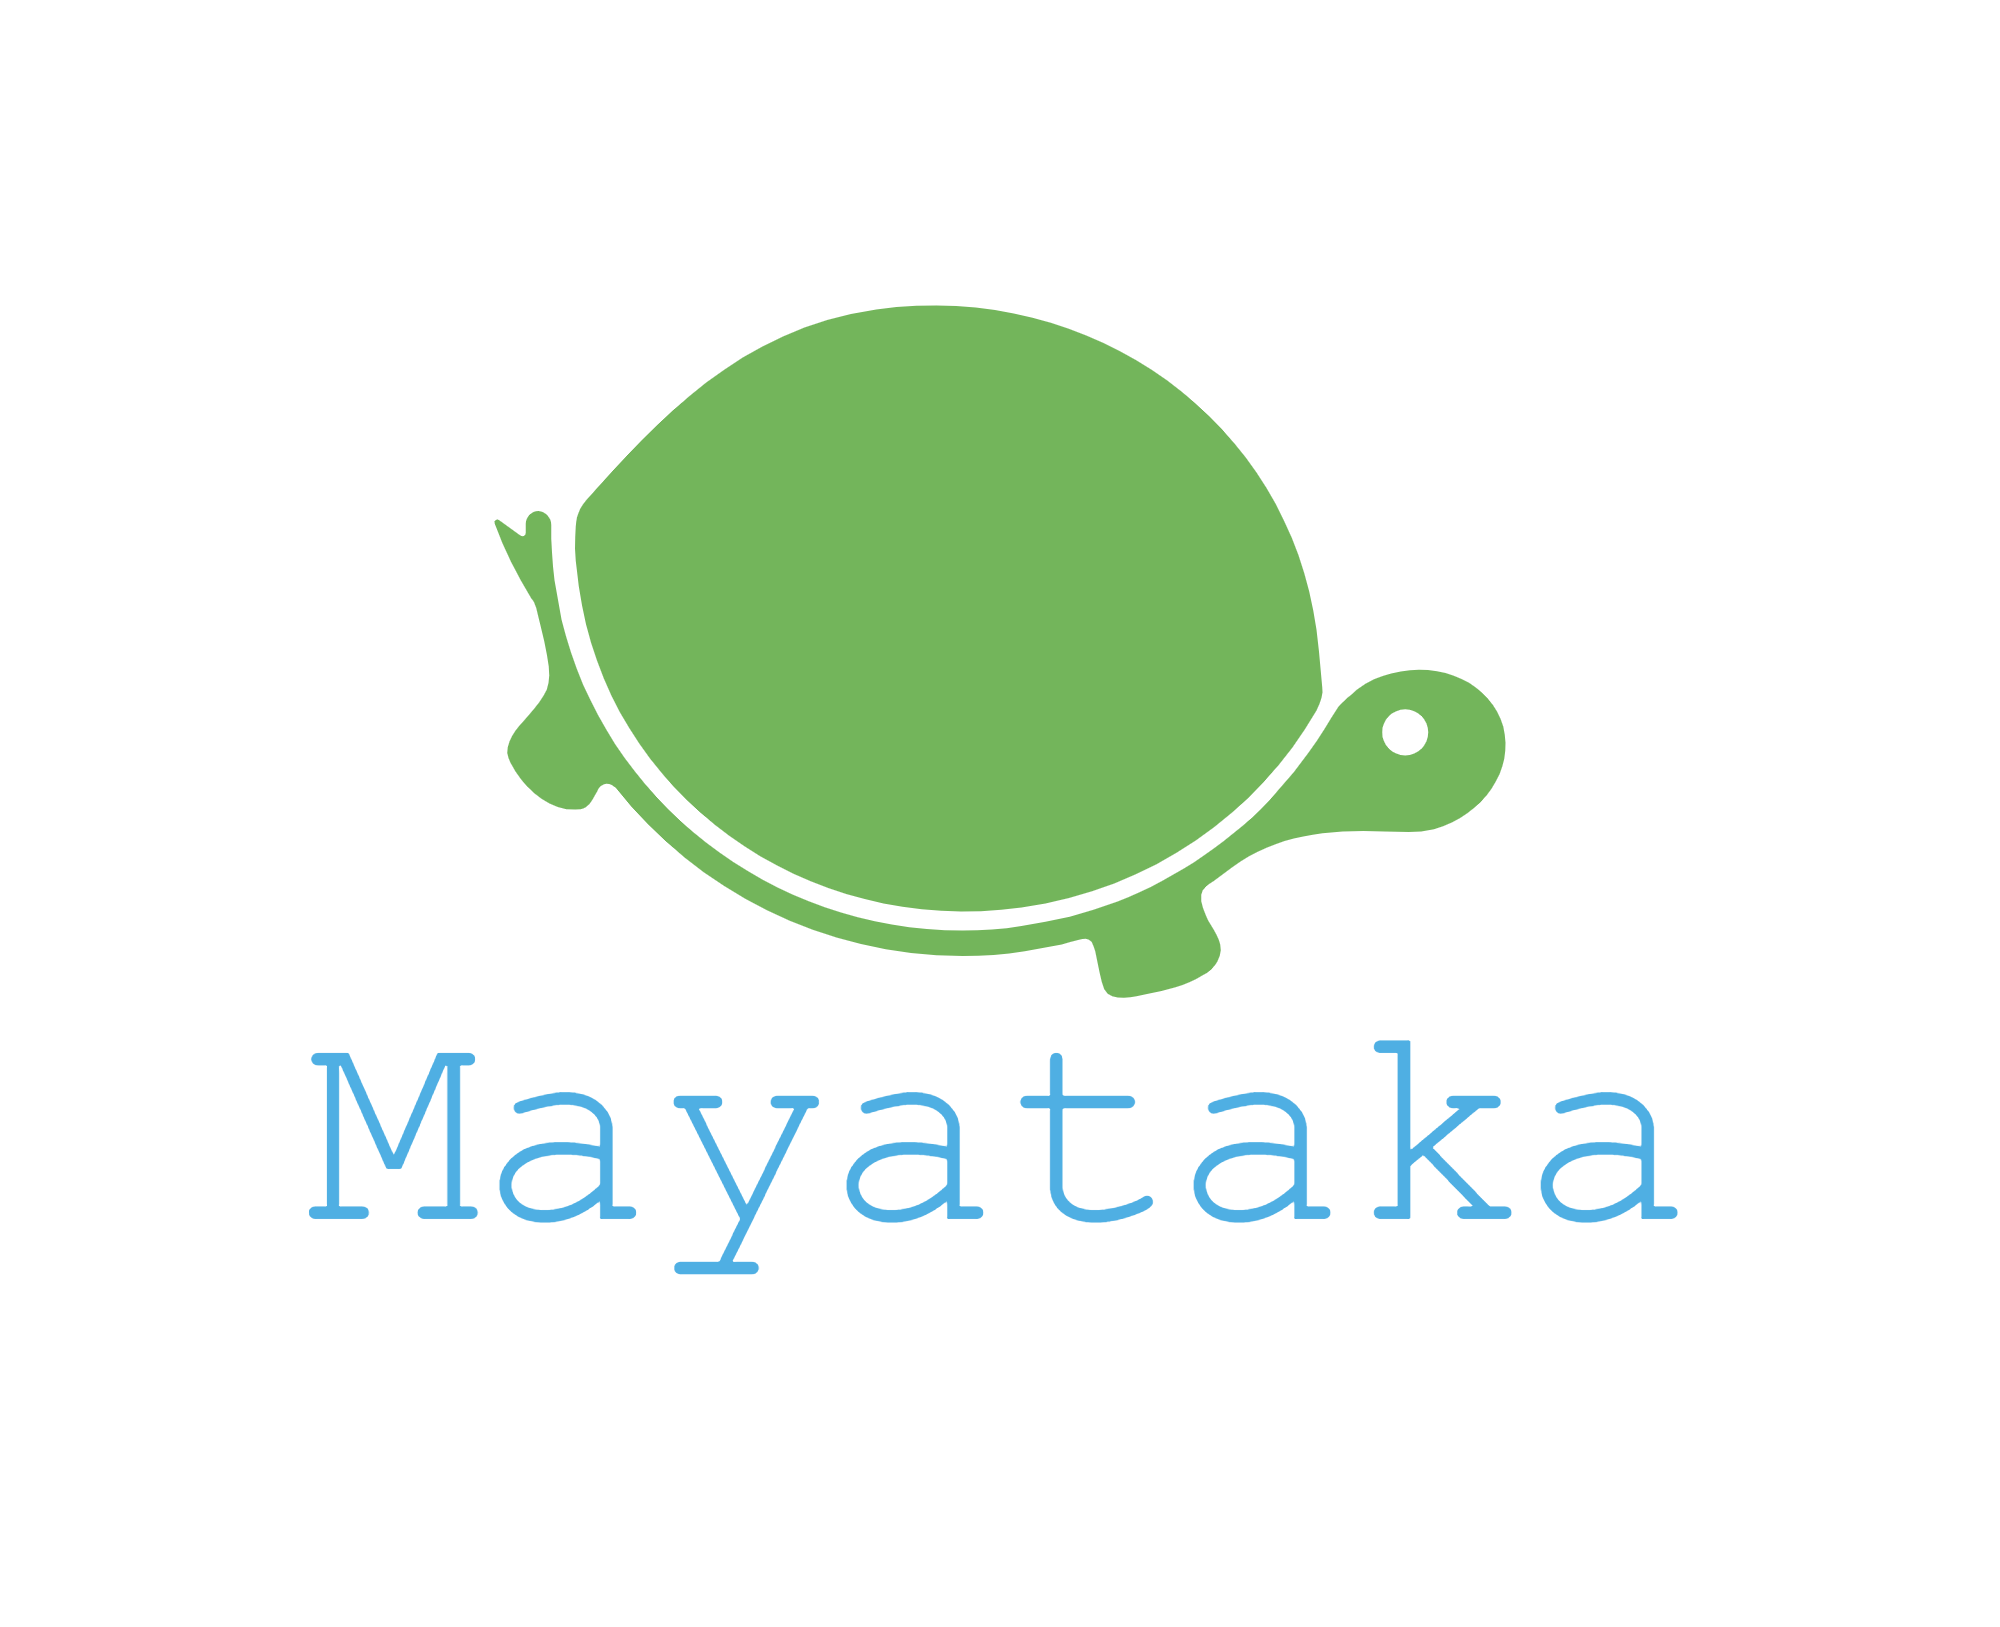 岐阜 名和昆虫博物館 では昆虫を楽しく学べるユニークな施設だった Mayataka Blog